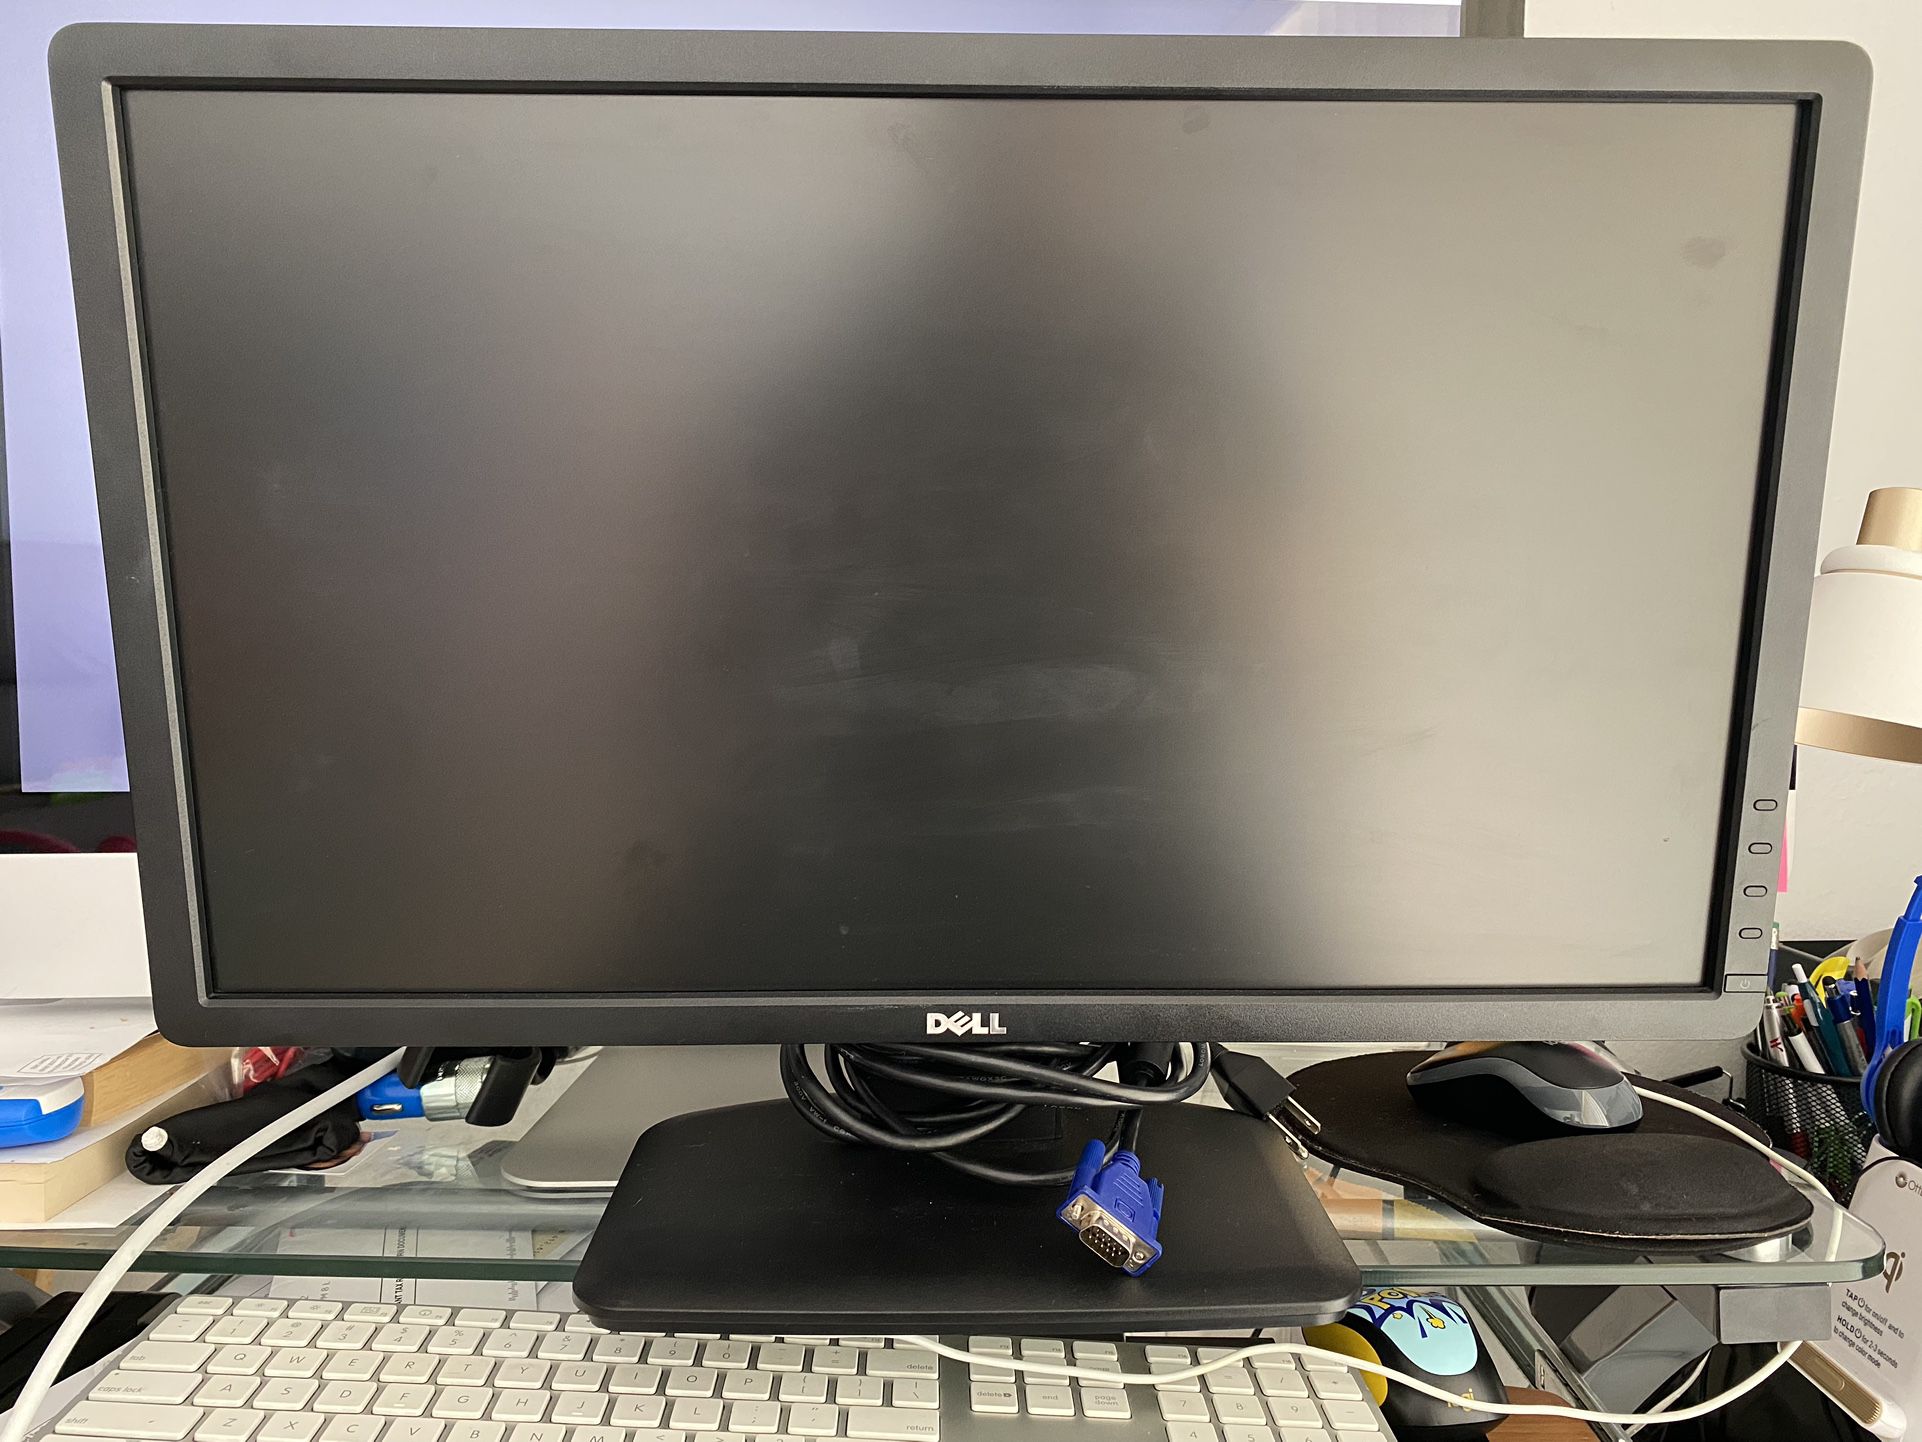 Dell Monitor 23” model E2313hf 